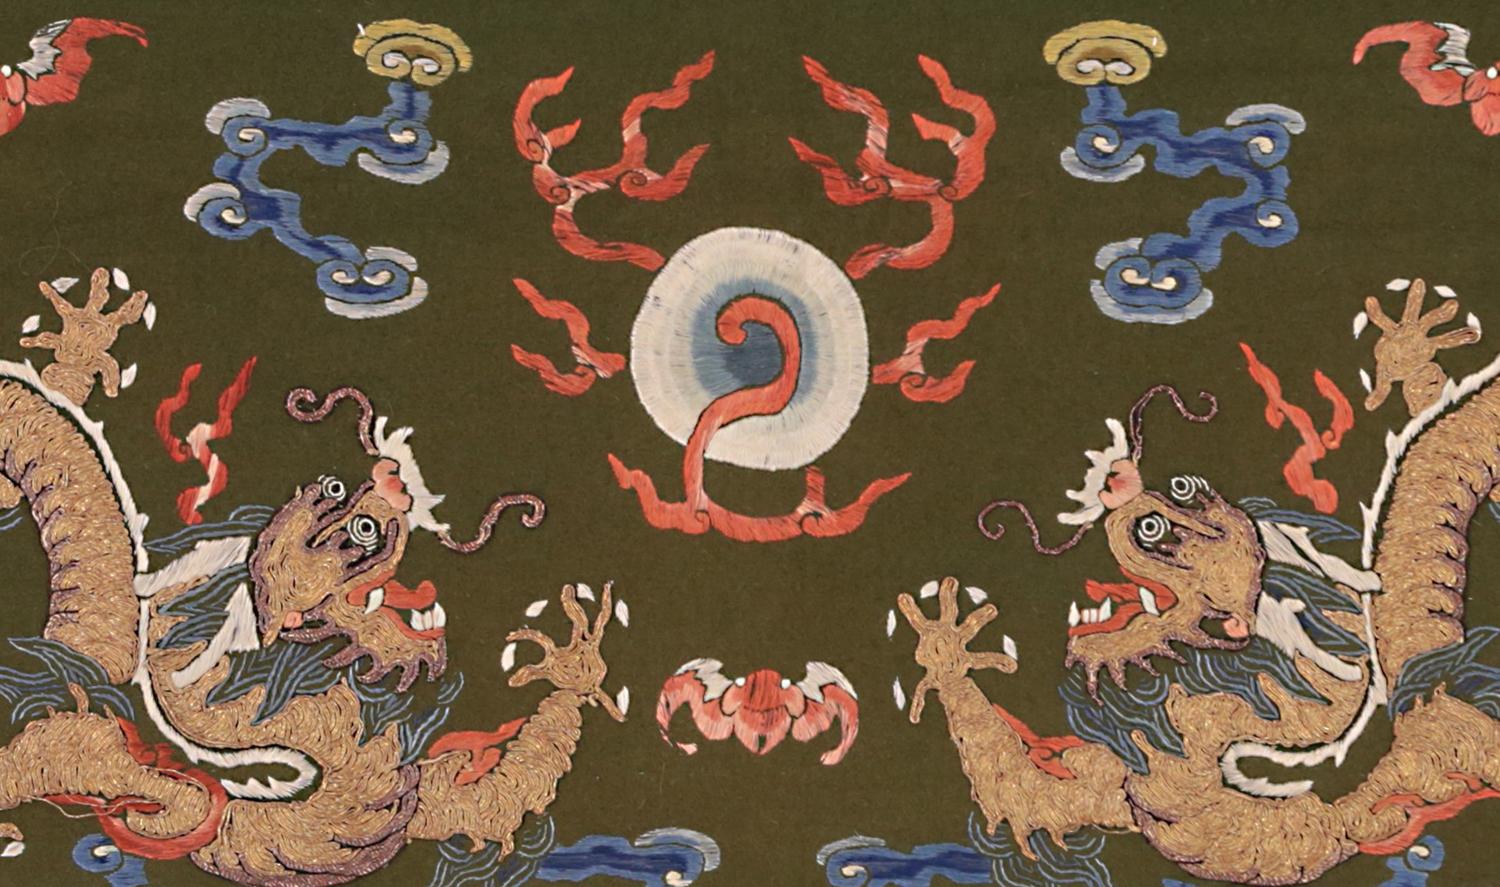 Diese einzigartigen und prächtigen Textilpaare mit ihrem unverwechselbaren Design können Sie für lange Zeit faszinieren. Mythische Drachen, die auf diesen Textilien abgebildet sind, spielten in der chinesischen Geschichte stets eine wichtige Rolle.